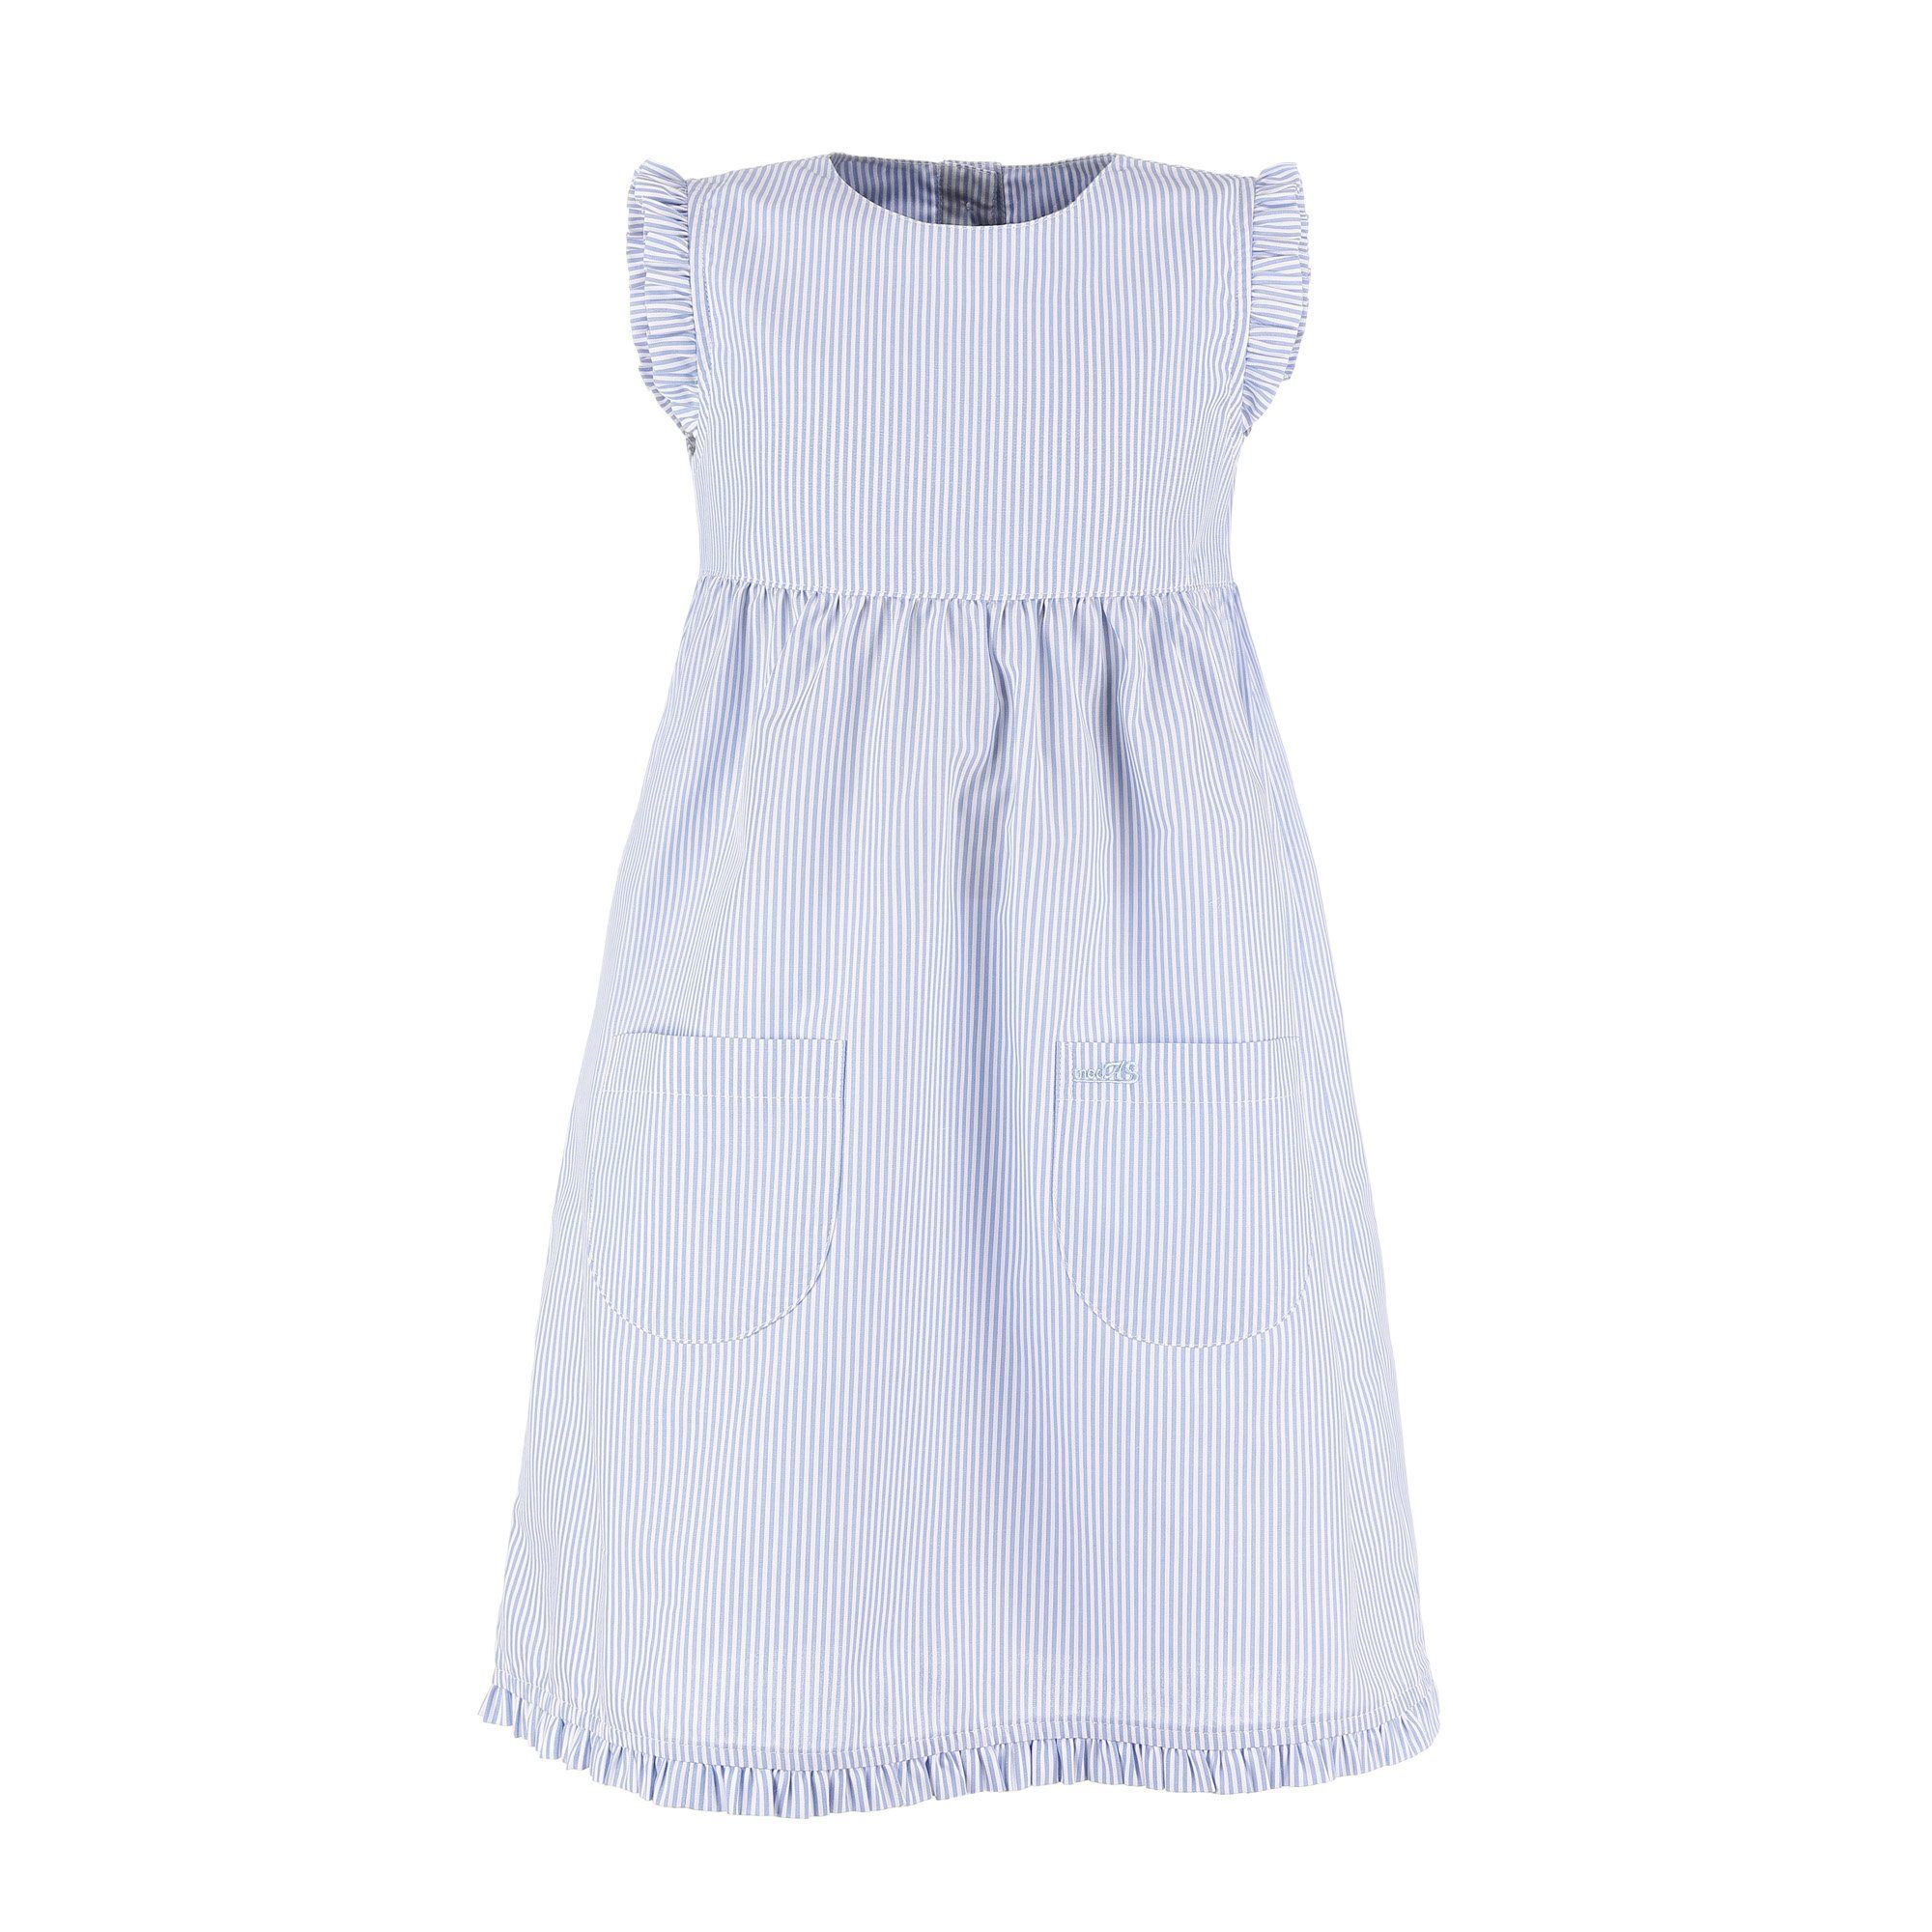 Sommerkleid Mädchenkleid mit Kinder - Streifen gestreift mit azur/weiß Kleid Rüschen (073) modAS gestreift